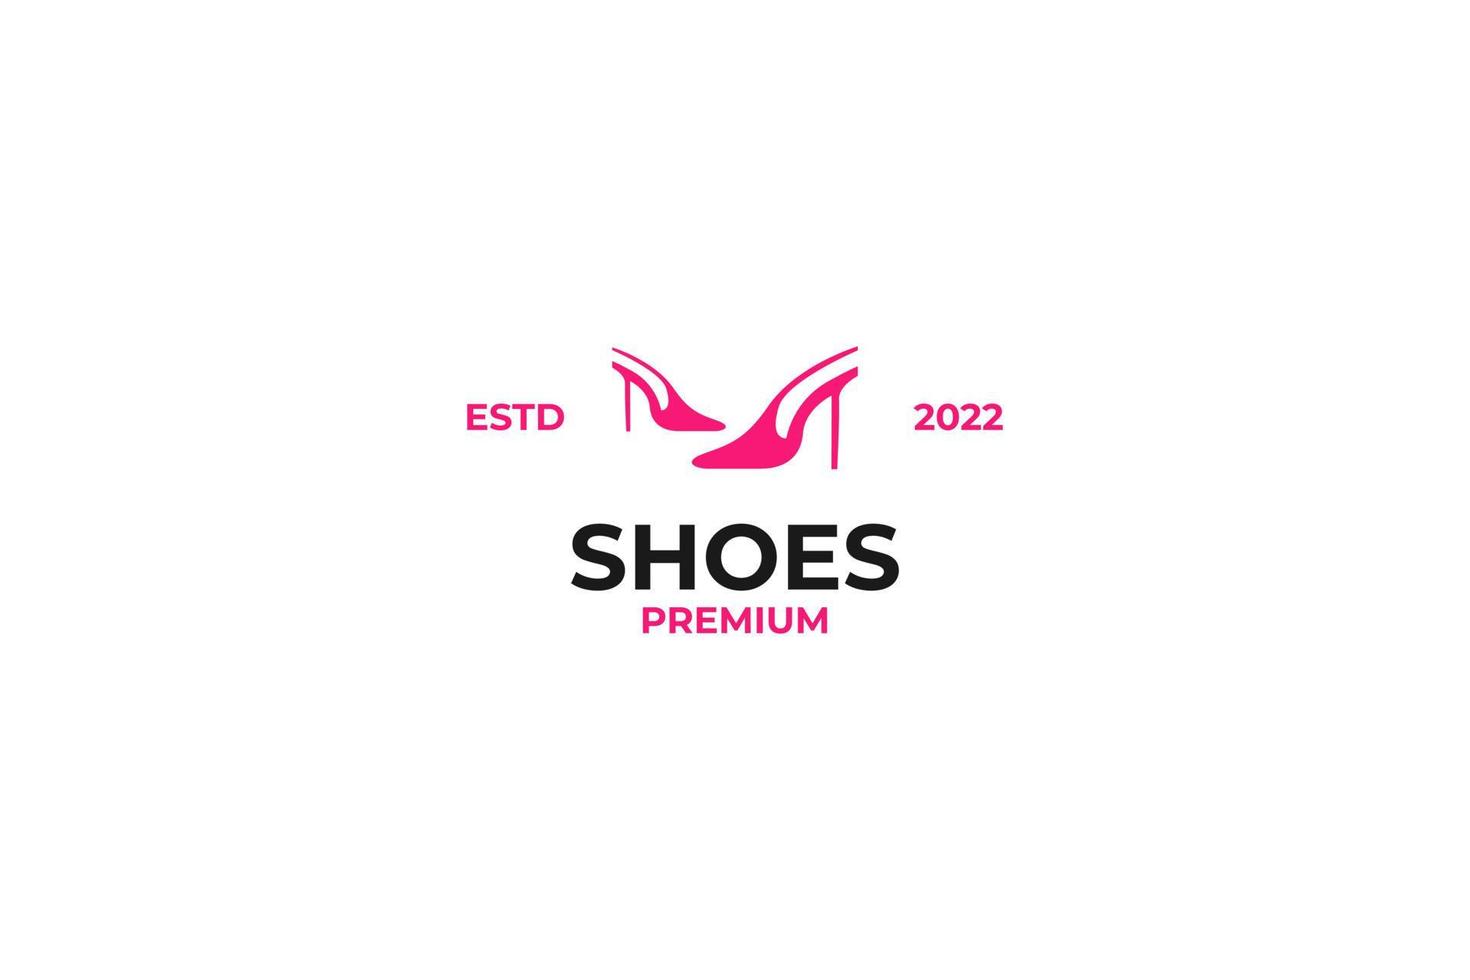 kreative high heels schuhe logo design vektorillustration vektor